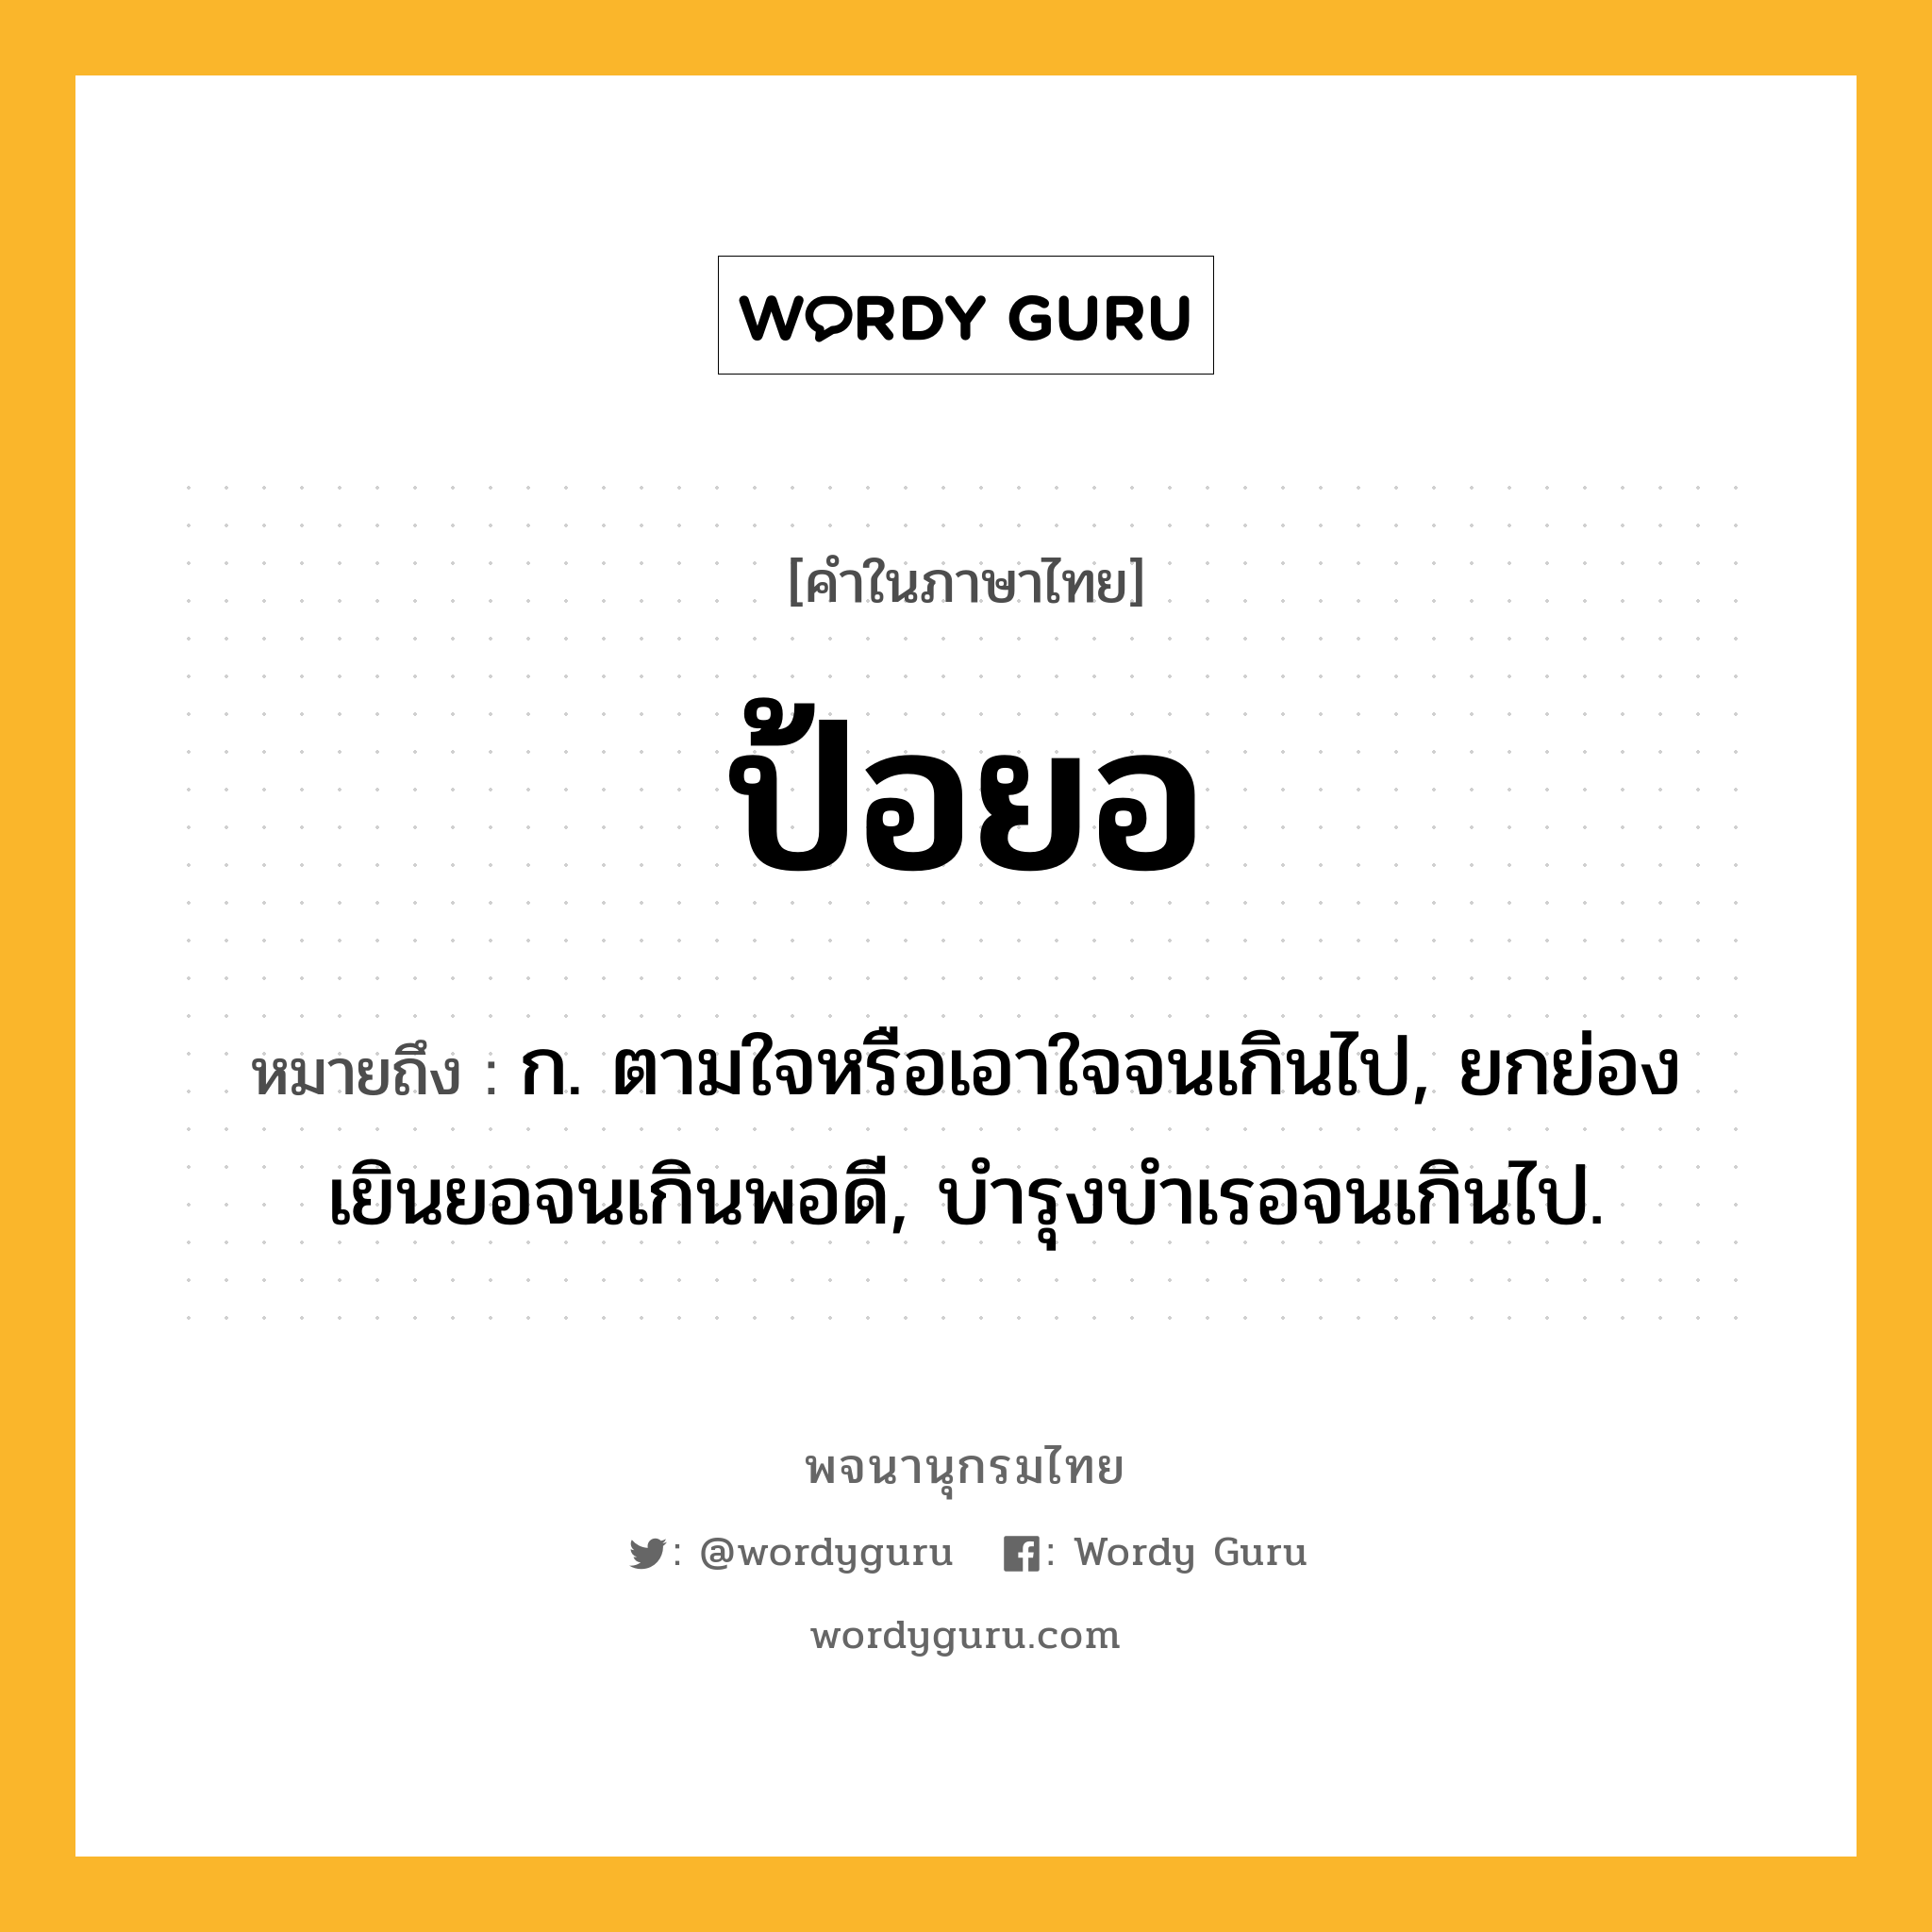 ป้อยอ หมายถึงอะไร?, คำในภาษาไทย ป้อยอ หมายถึง ก. ตามใจหรือเอาใจจนเกินไป, ยกย่องเยินยอจนเกินพอดี, บํารุงบําเรอจนเกินไป.